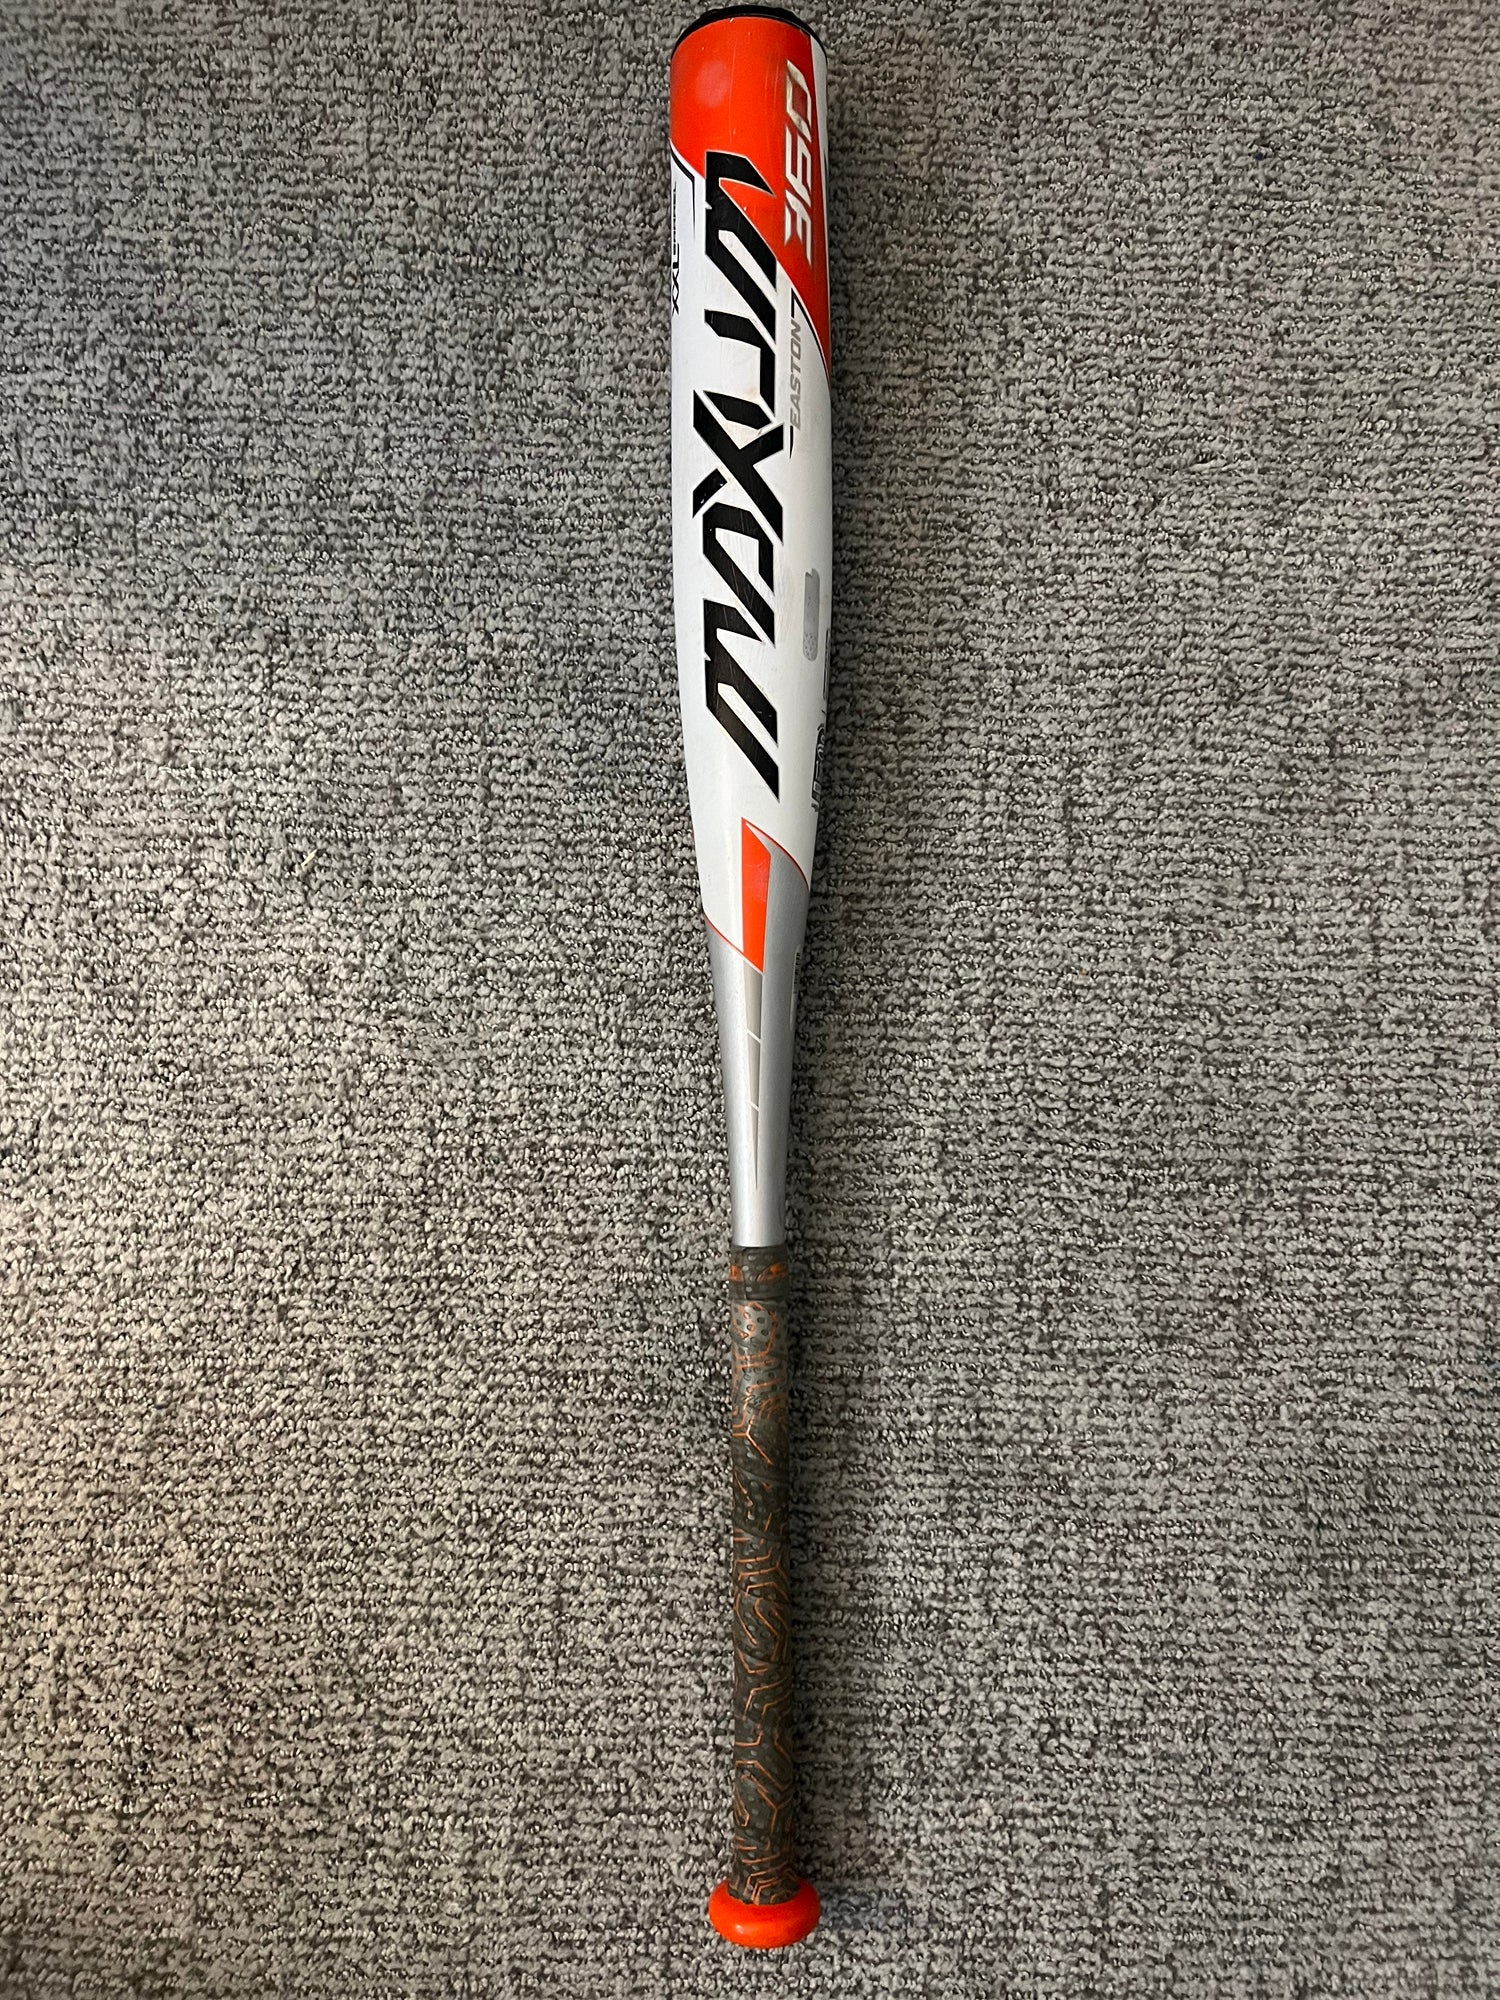 2020 Easton Maxum 360 BBCOR Baseball Bat (-3)